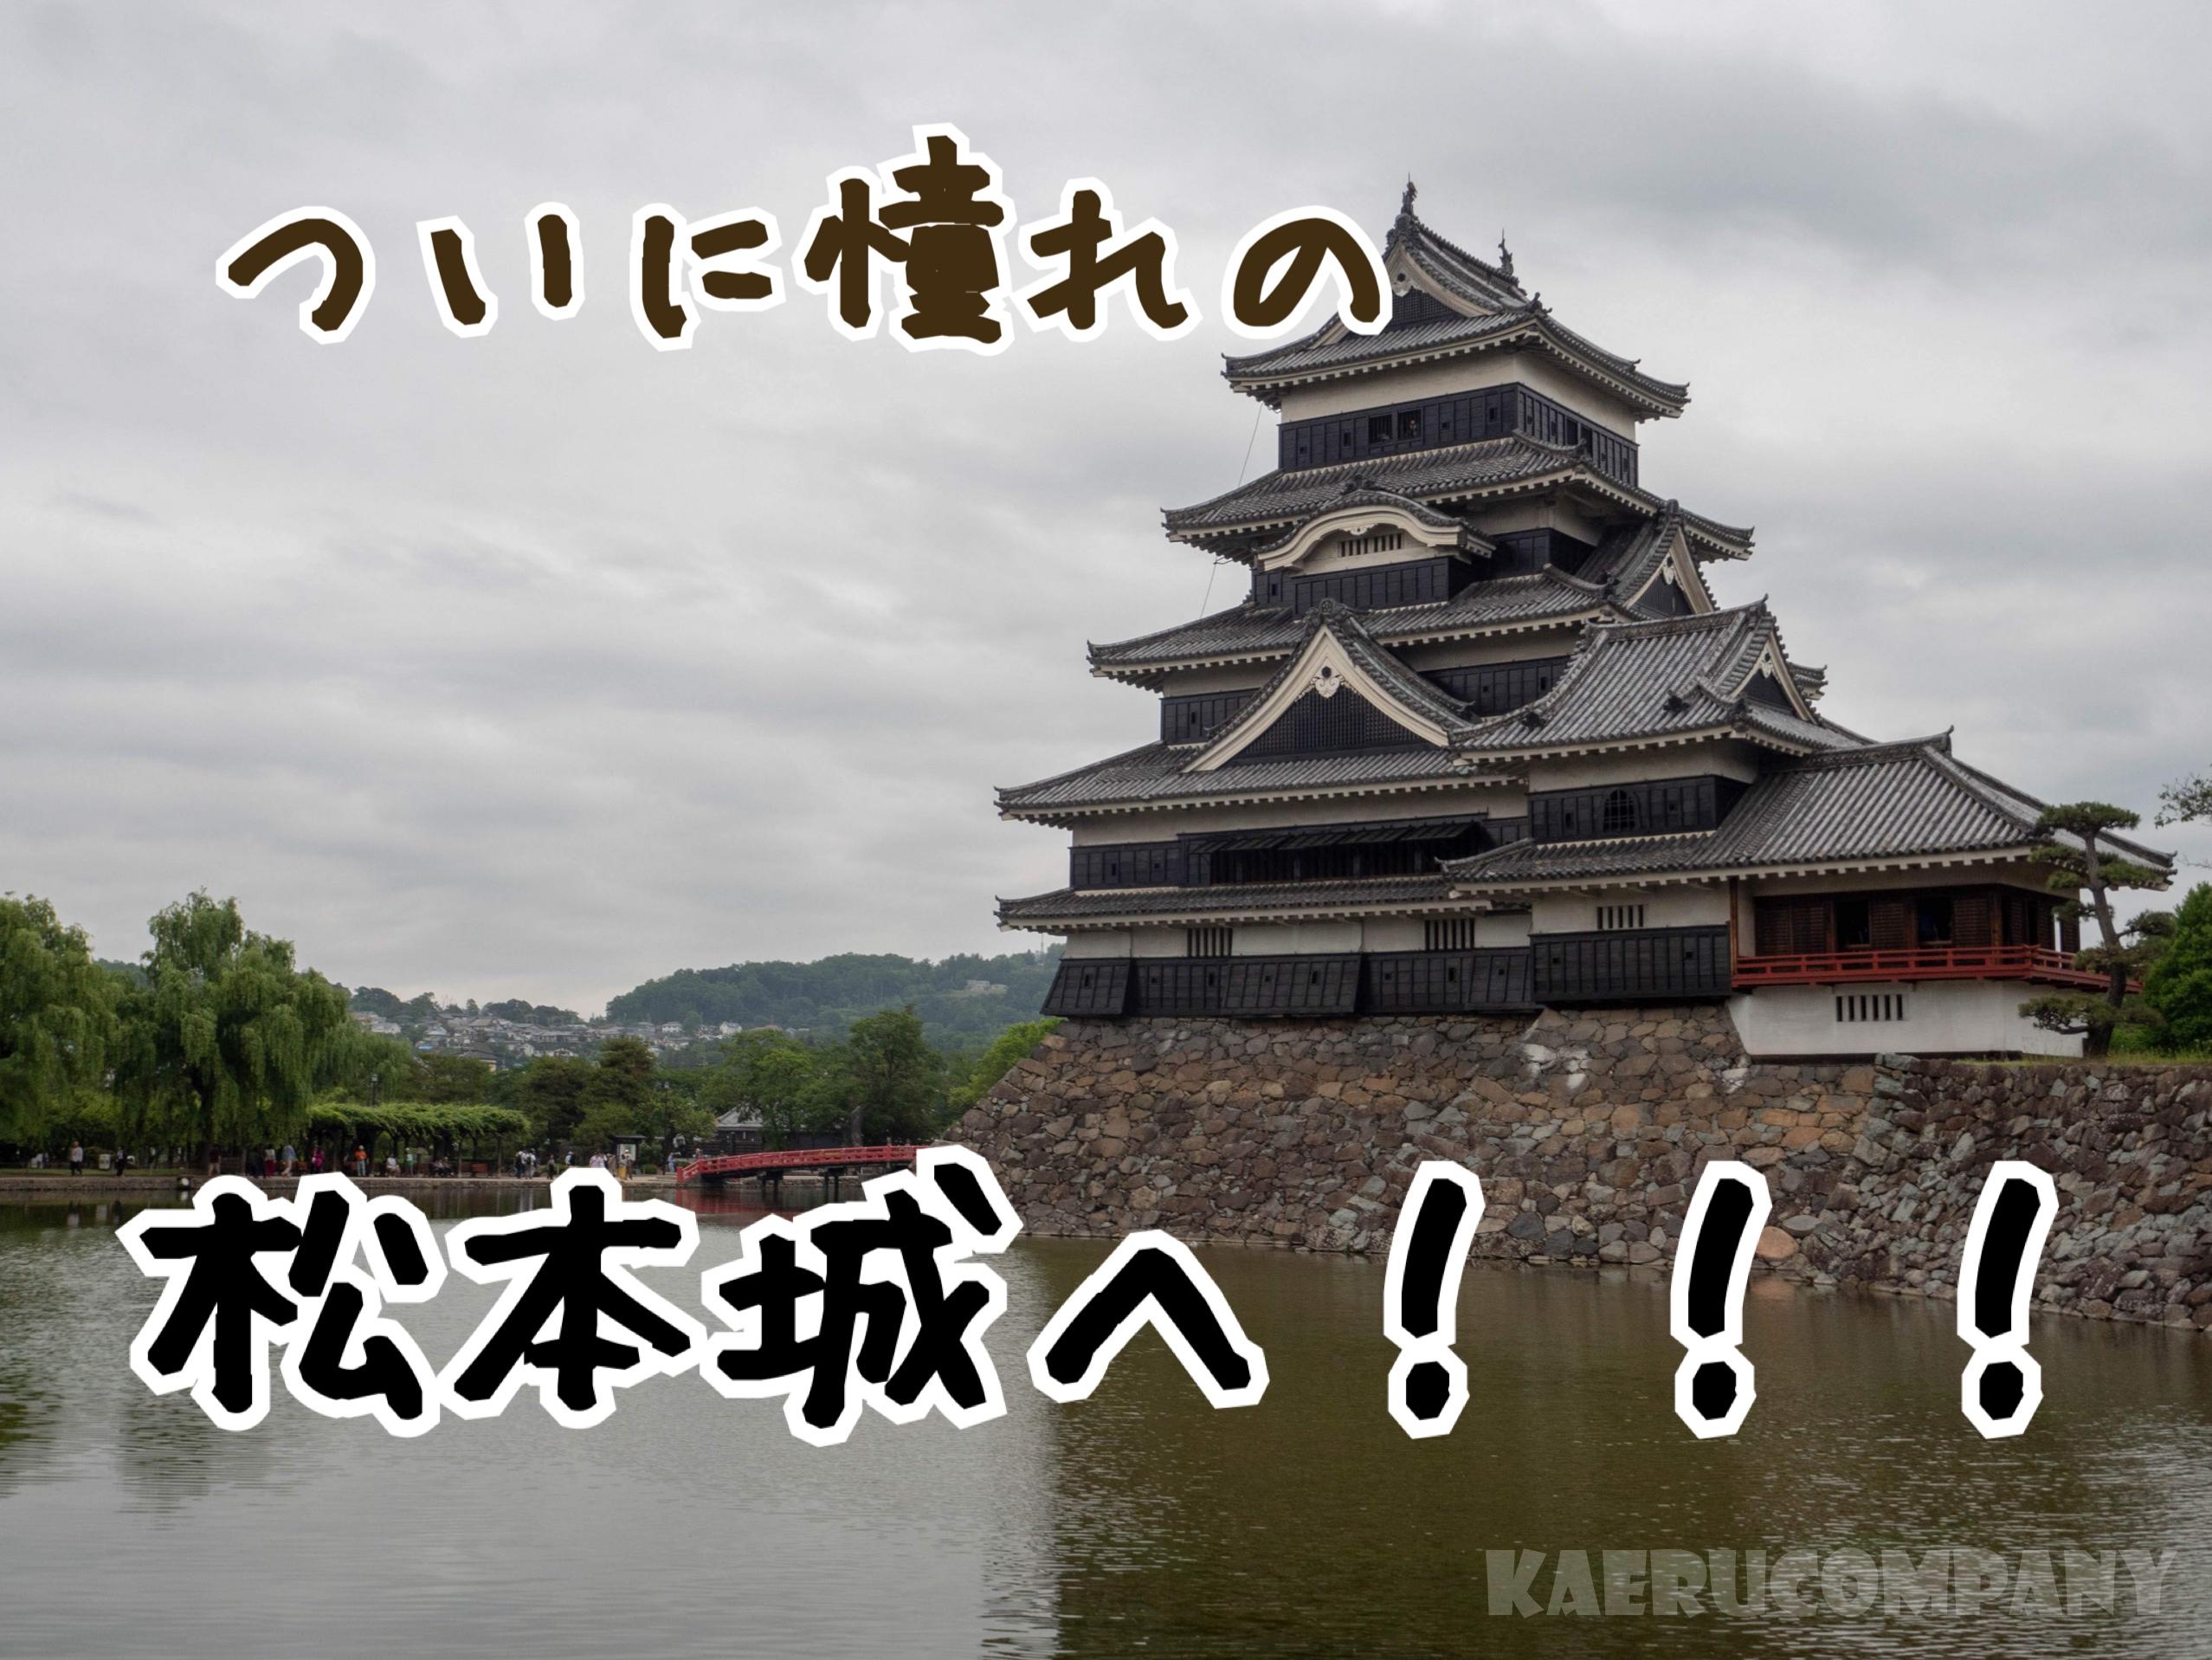 信州でここへ行かずにどこへ行く！？ついに憧れの松本城へ！圧倒的存在感に打ちのめされる。